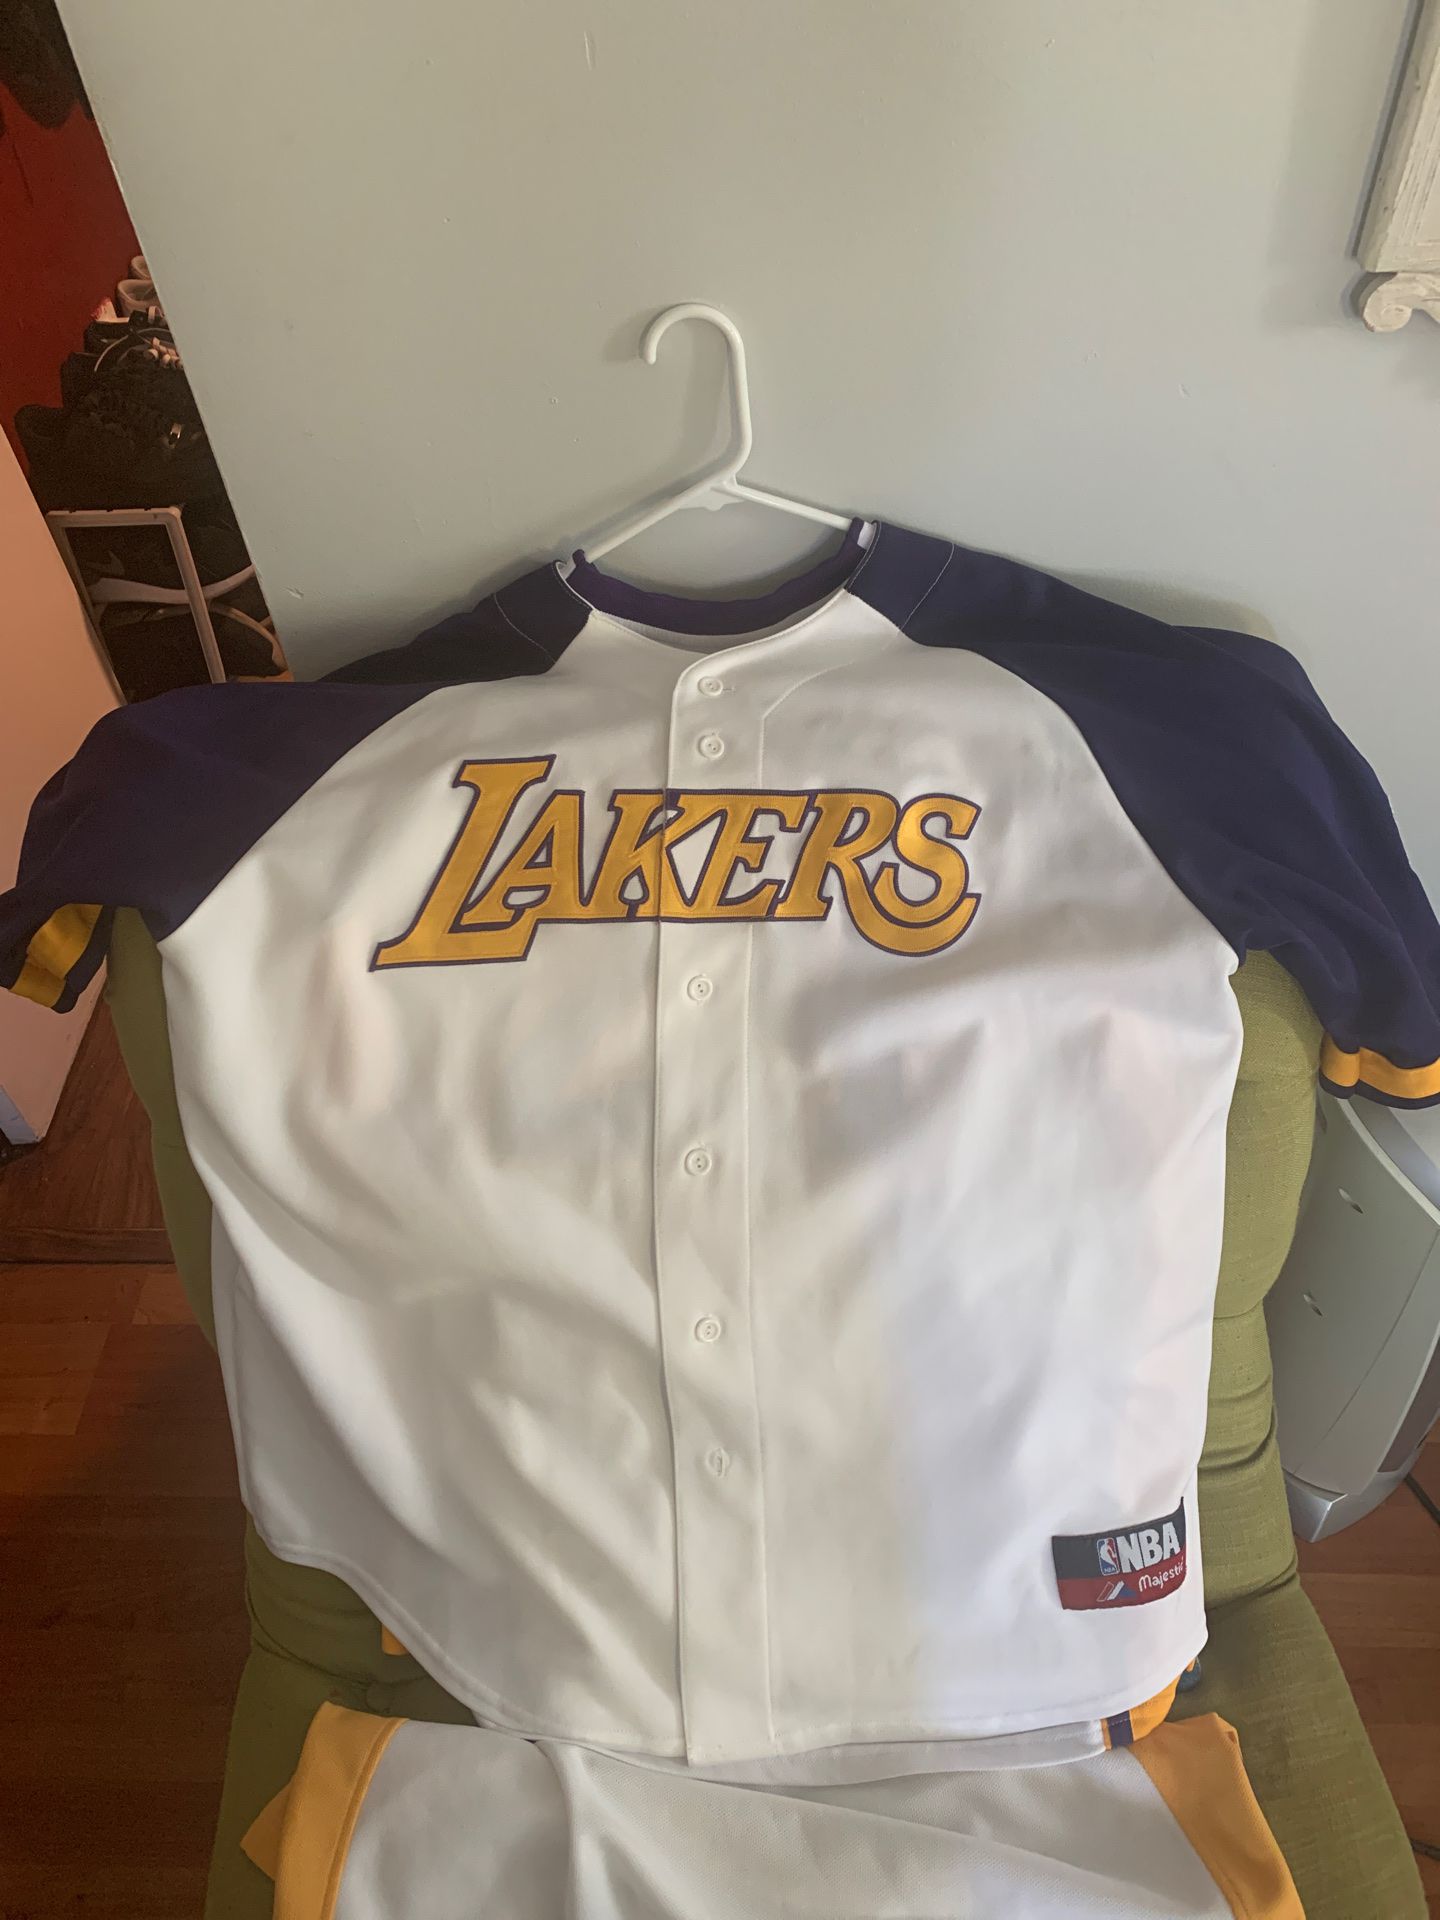 Lakers baseball jersey